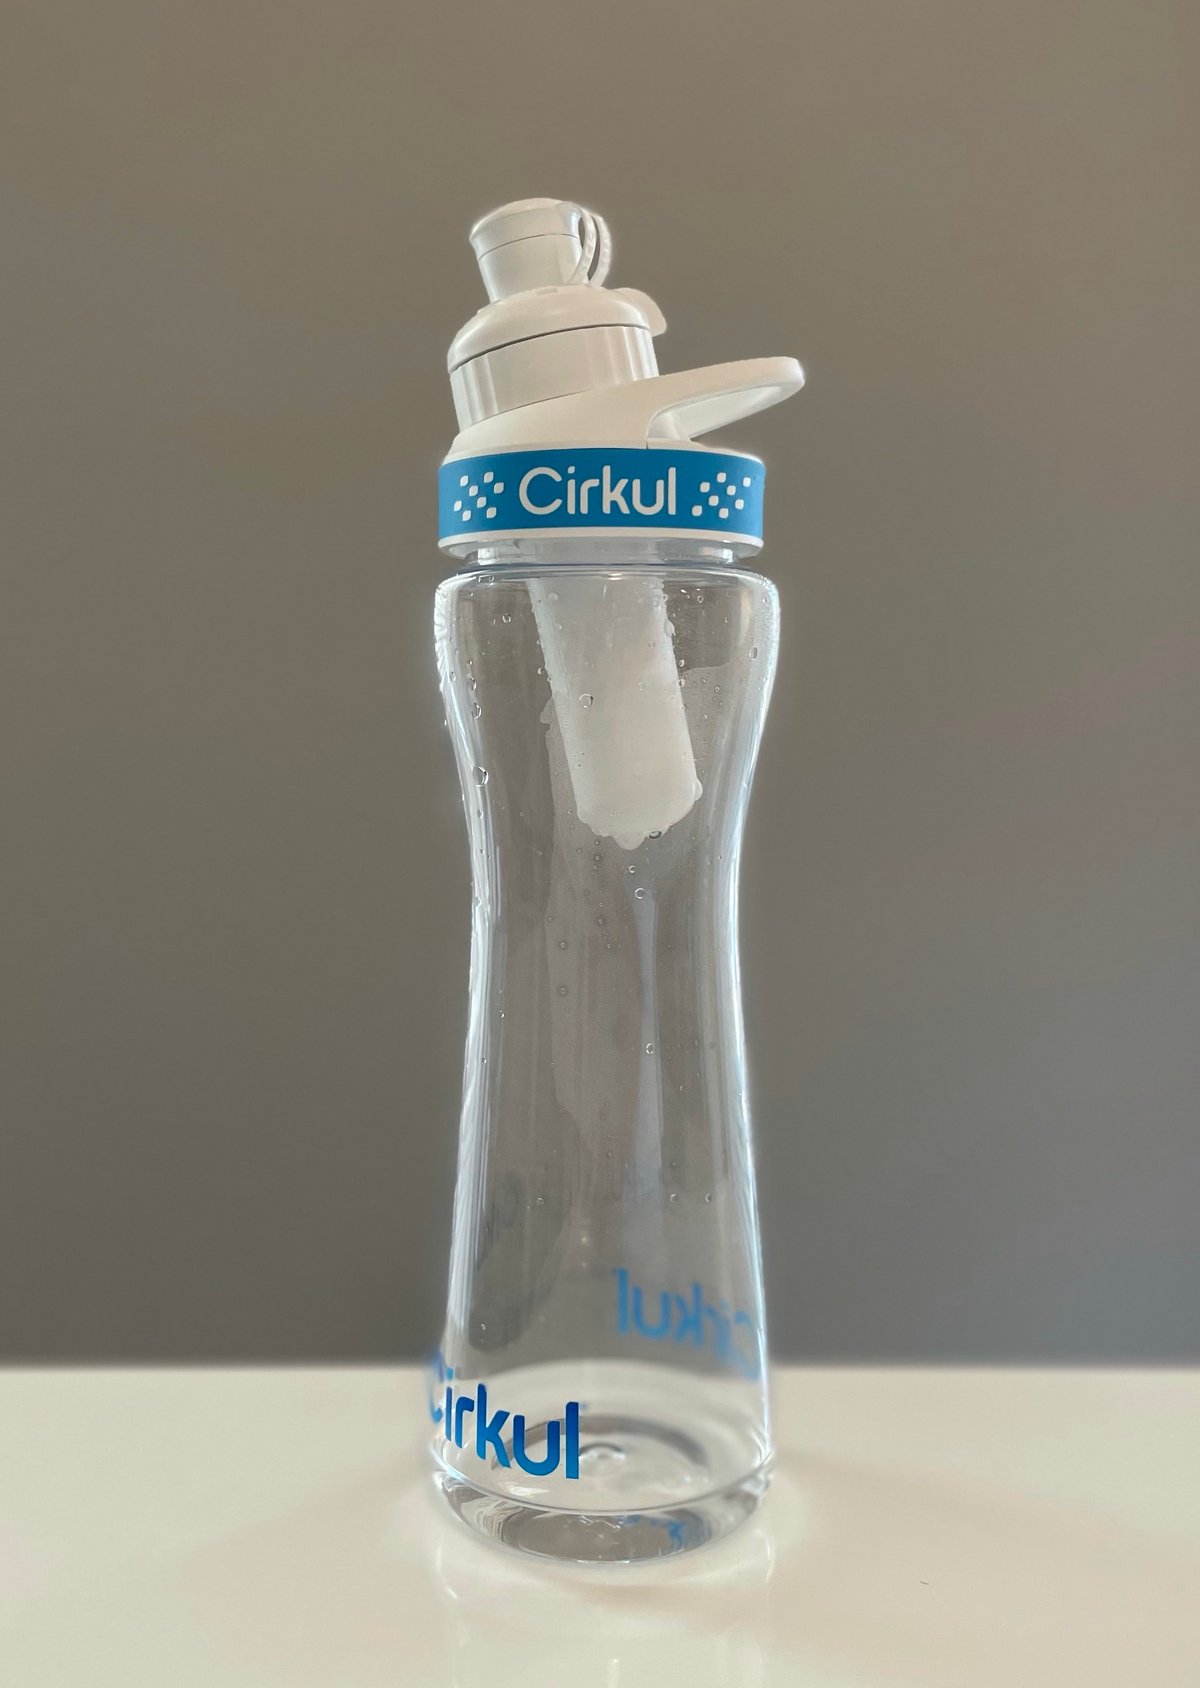 https://wetried.it/cdn-cgi/imagedelivery/2TqHVWJc_vpFBiW-iQAMcw/wetried.it/2021/06/cirkul-water-bottle.jpg/w=1200